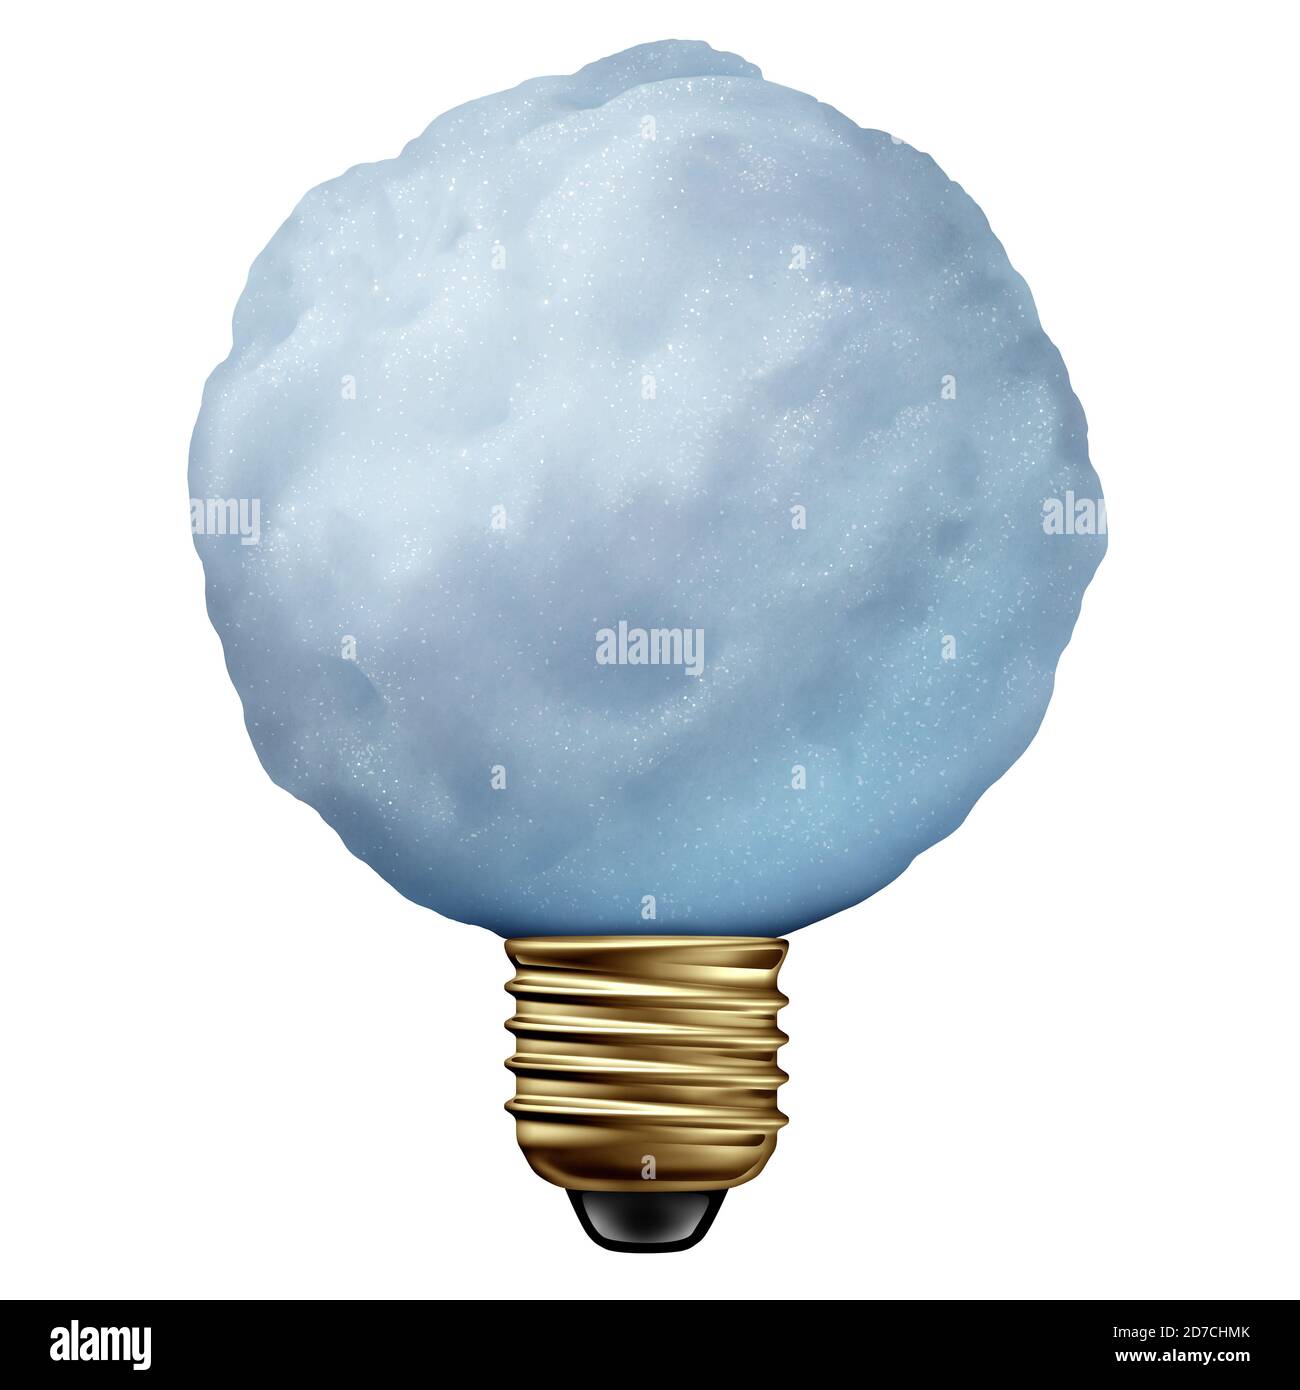 Idées d'hiver comme boule de neige créative en forme d'ampoule ou de bulbas de lumière un cristal de glace gelé isolé sur un fond blanc comme symbole du froid. Banque D'Images